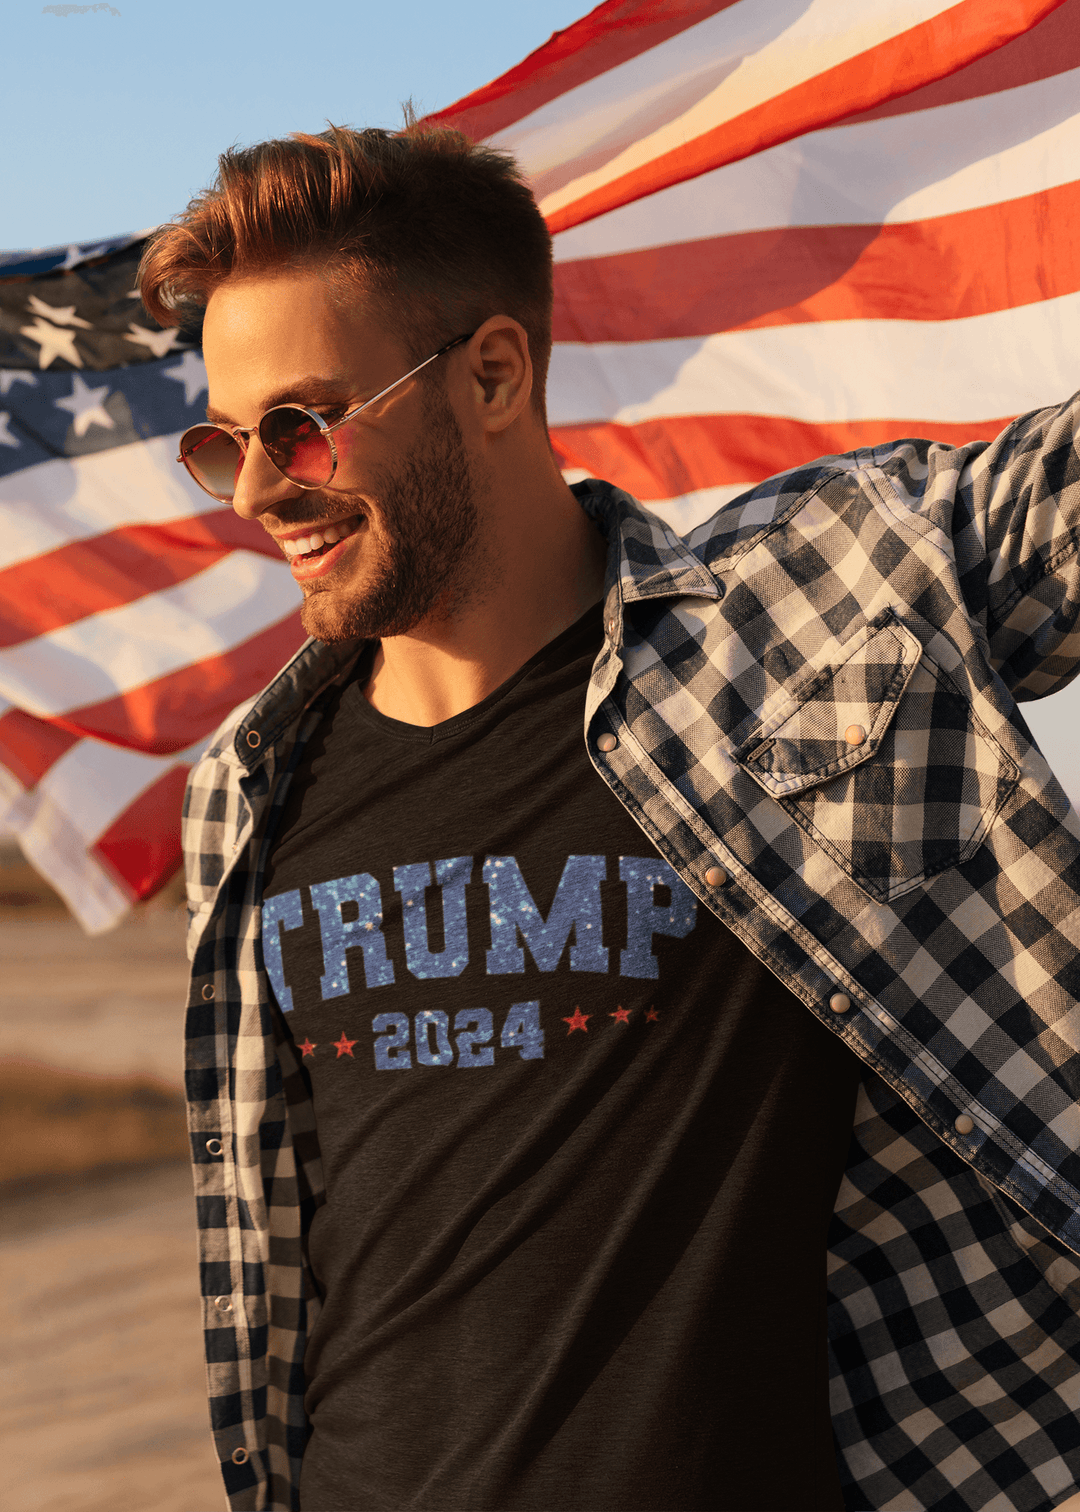 Political T-shirt Sparkiling Trump 2024 Short Sleeve 100% Cotton Crew Neck Top - TopKoalaTee